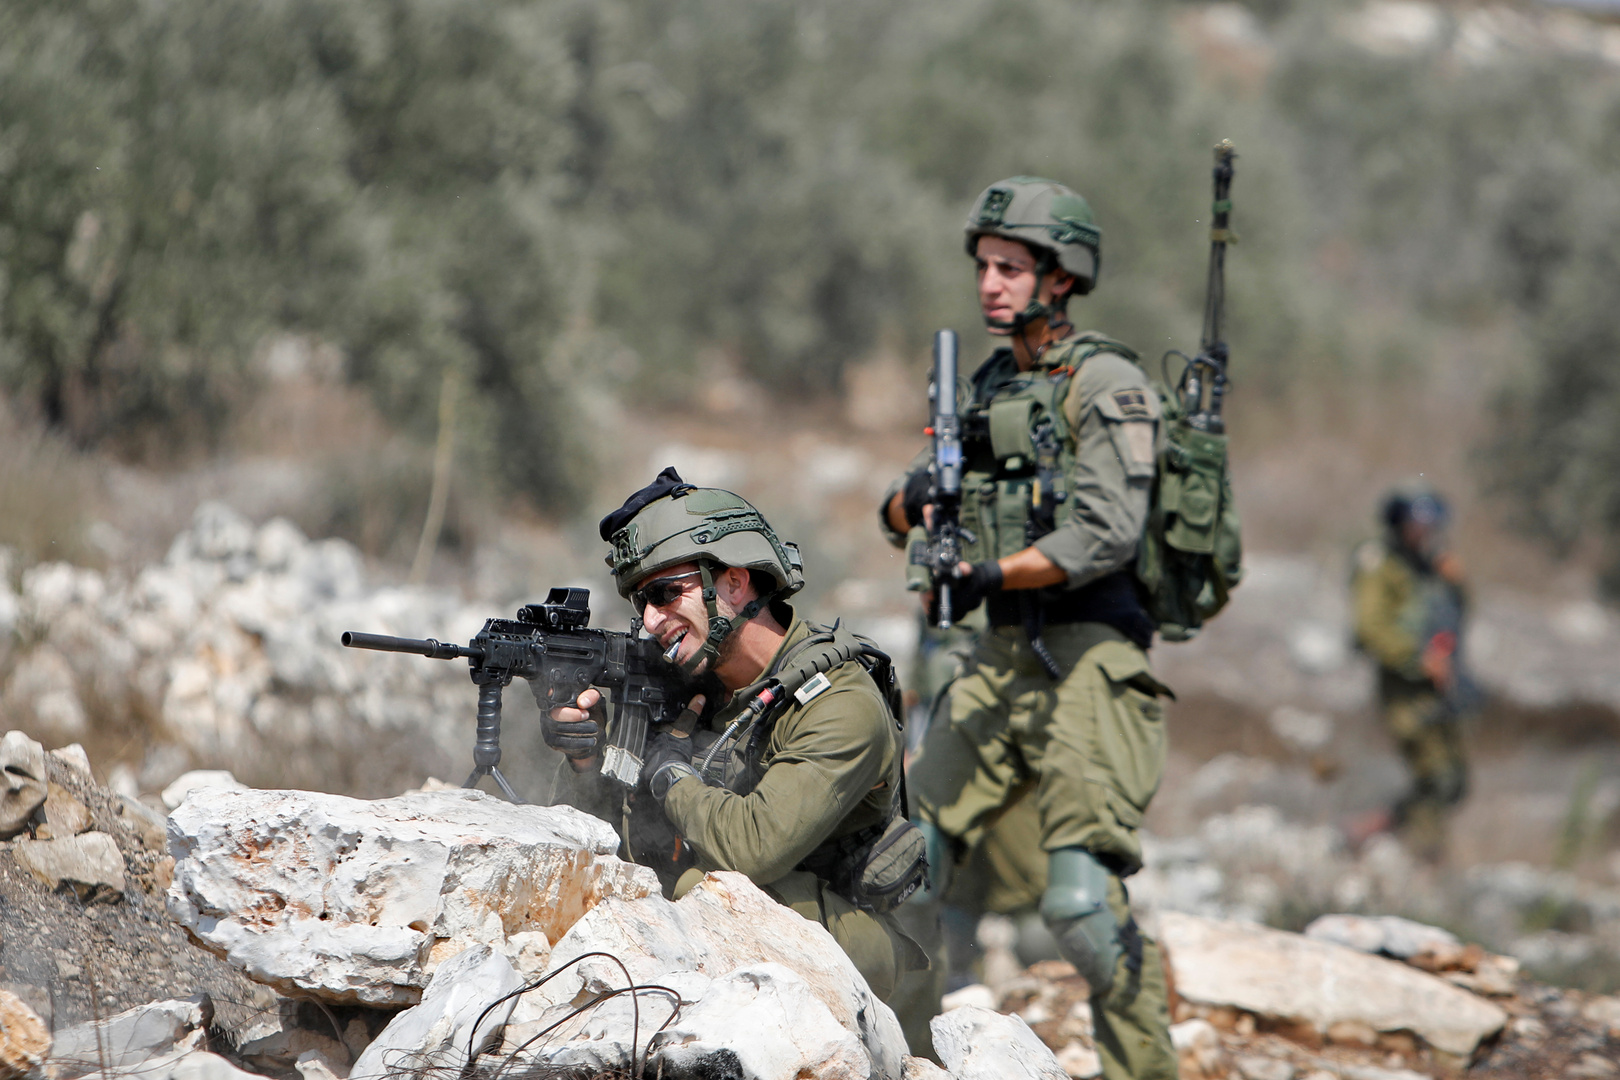 وفا: الجيش الإسرائيلي يعدم مواطنا فلسطينيا على حاجز حوارة العسكري